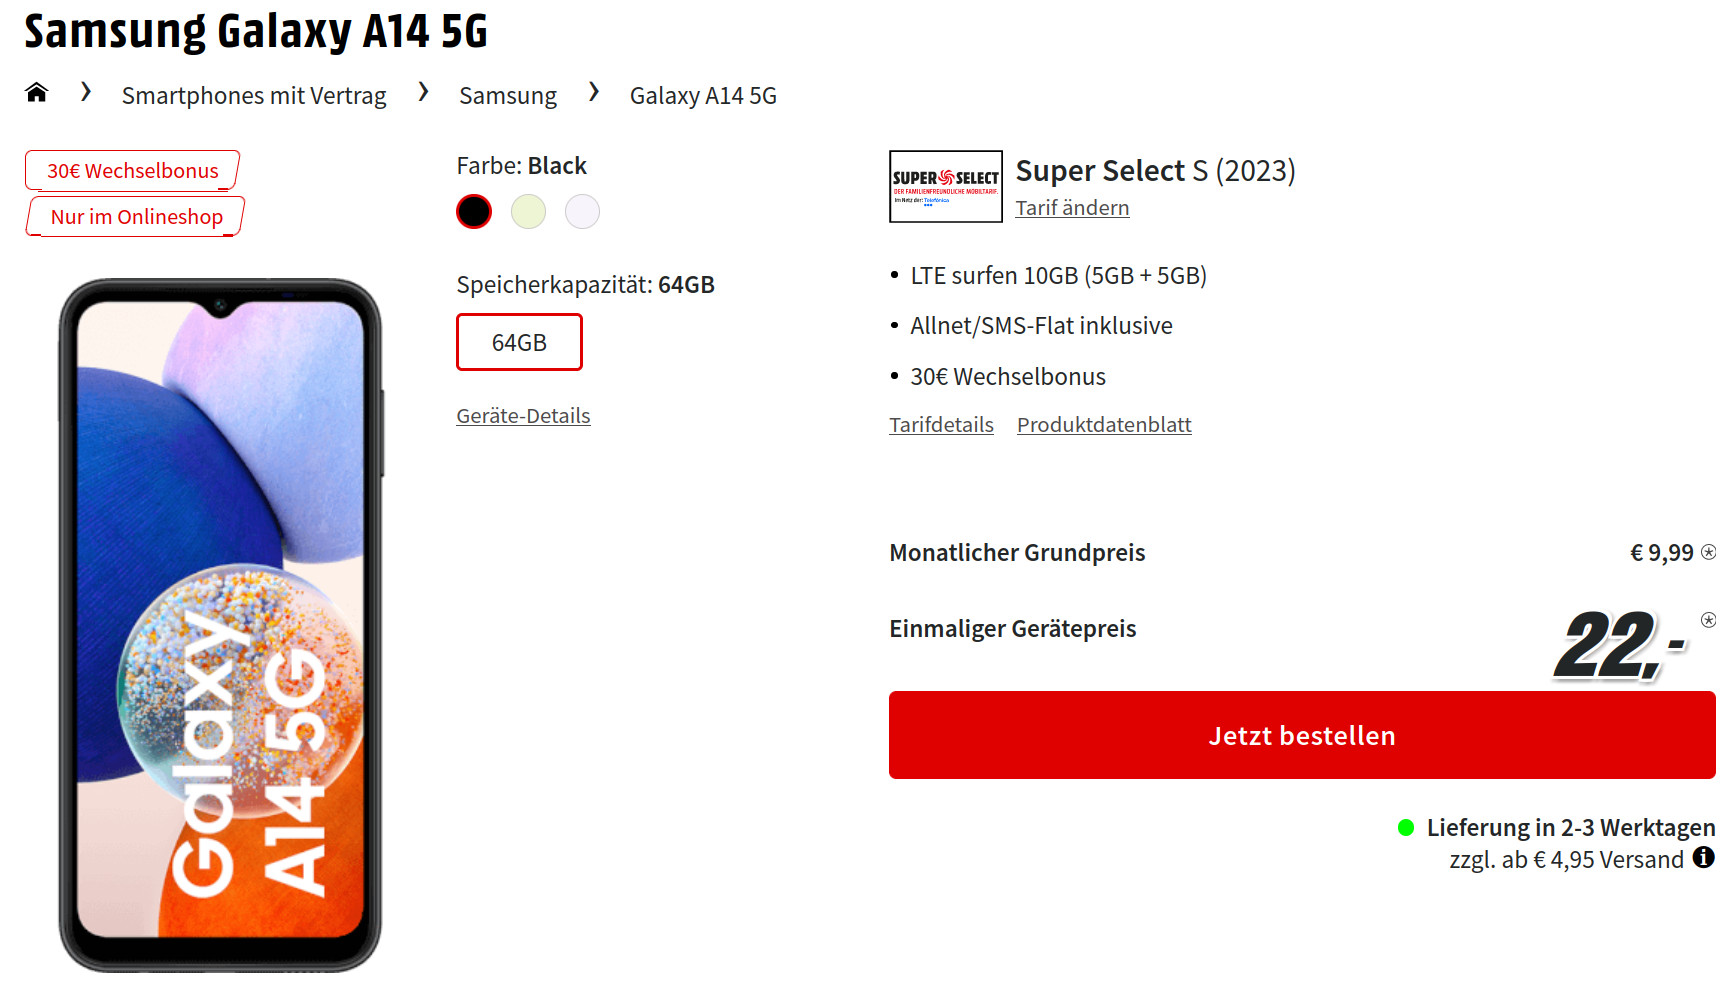 Galaxy A14 5G Handtarife: Samsung Galaxy A14 5G für mtl. 9,99 Euro/Eff. 2,99 Euro